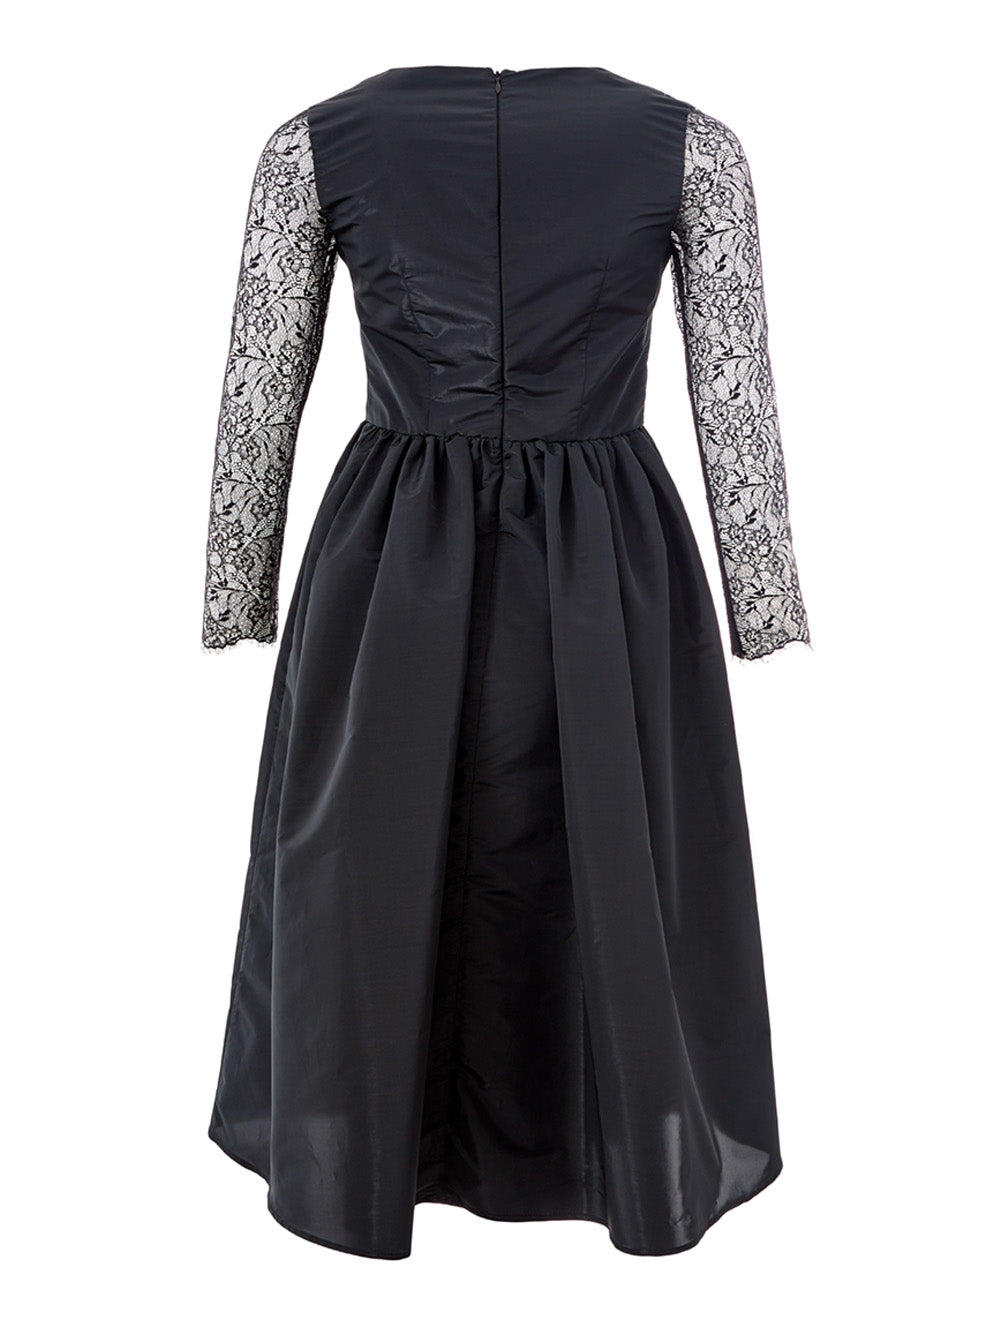 Lardini Black Long Dress with Lace details